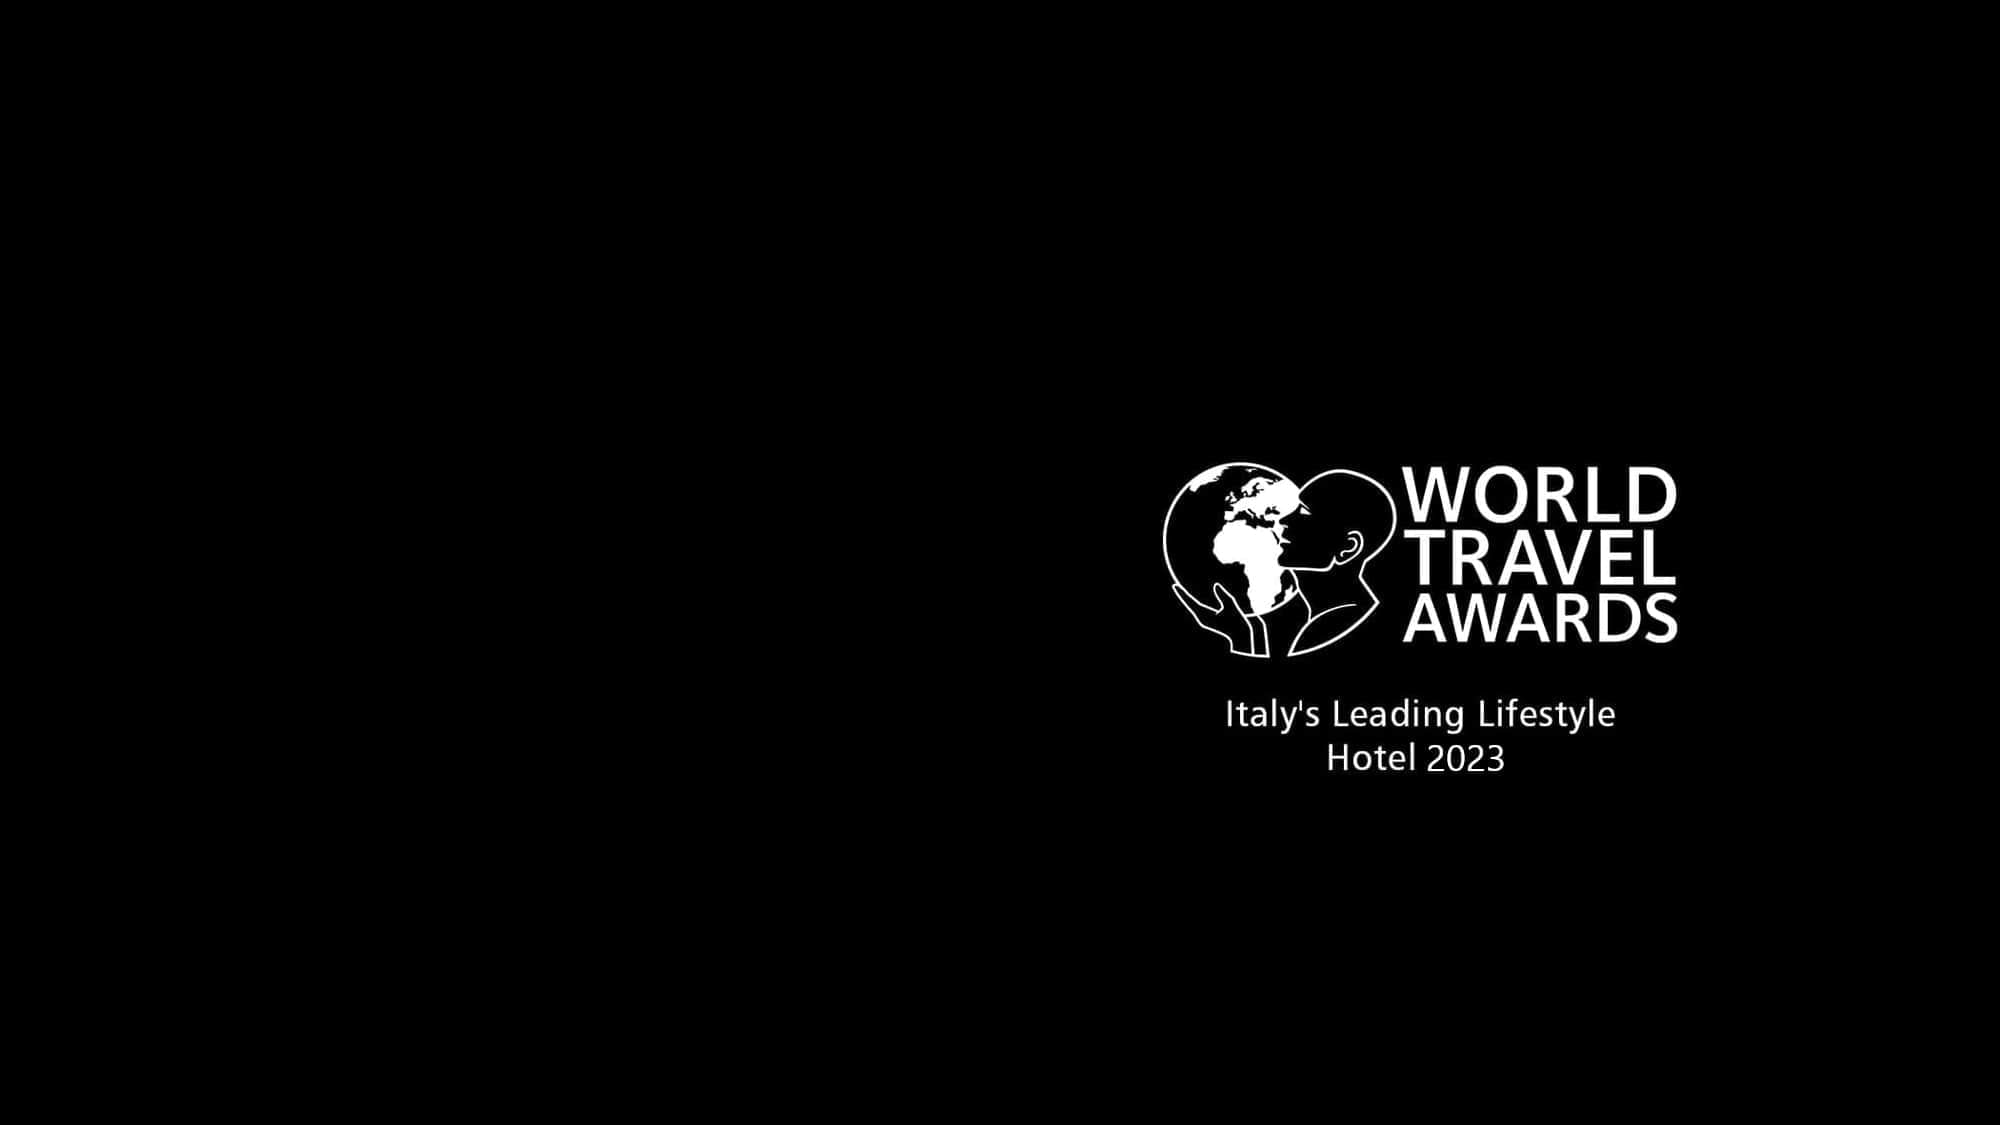 World Travel Awards: Italy’s Leading Lifestyle Hotel 2023